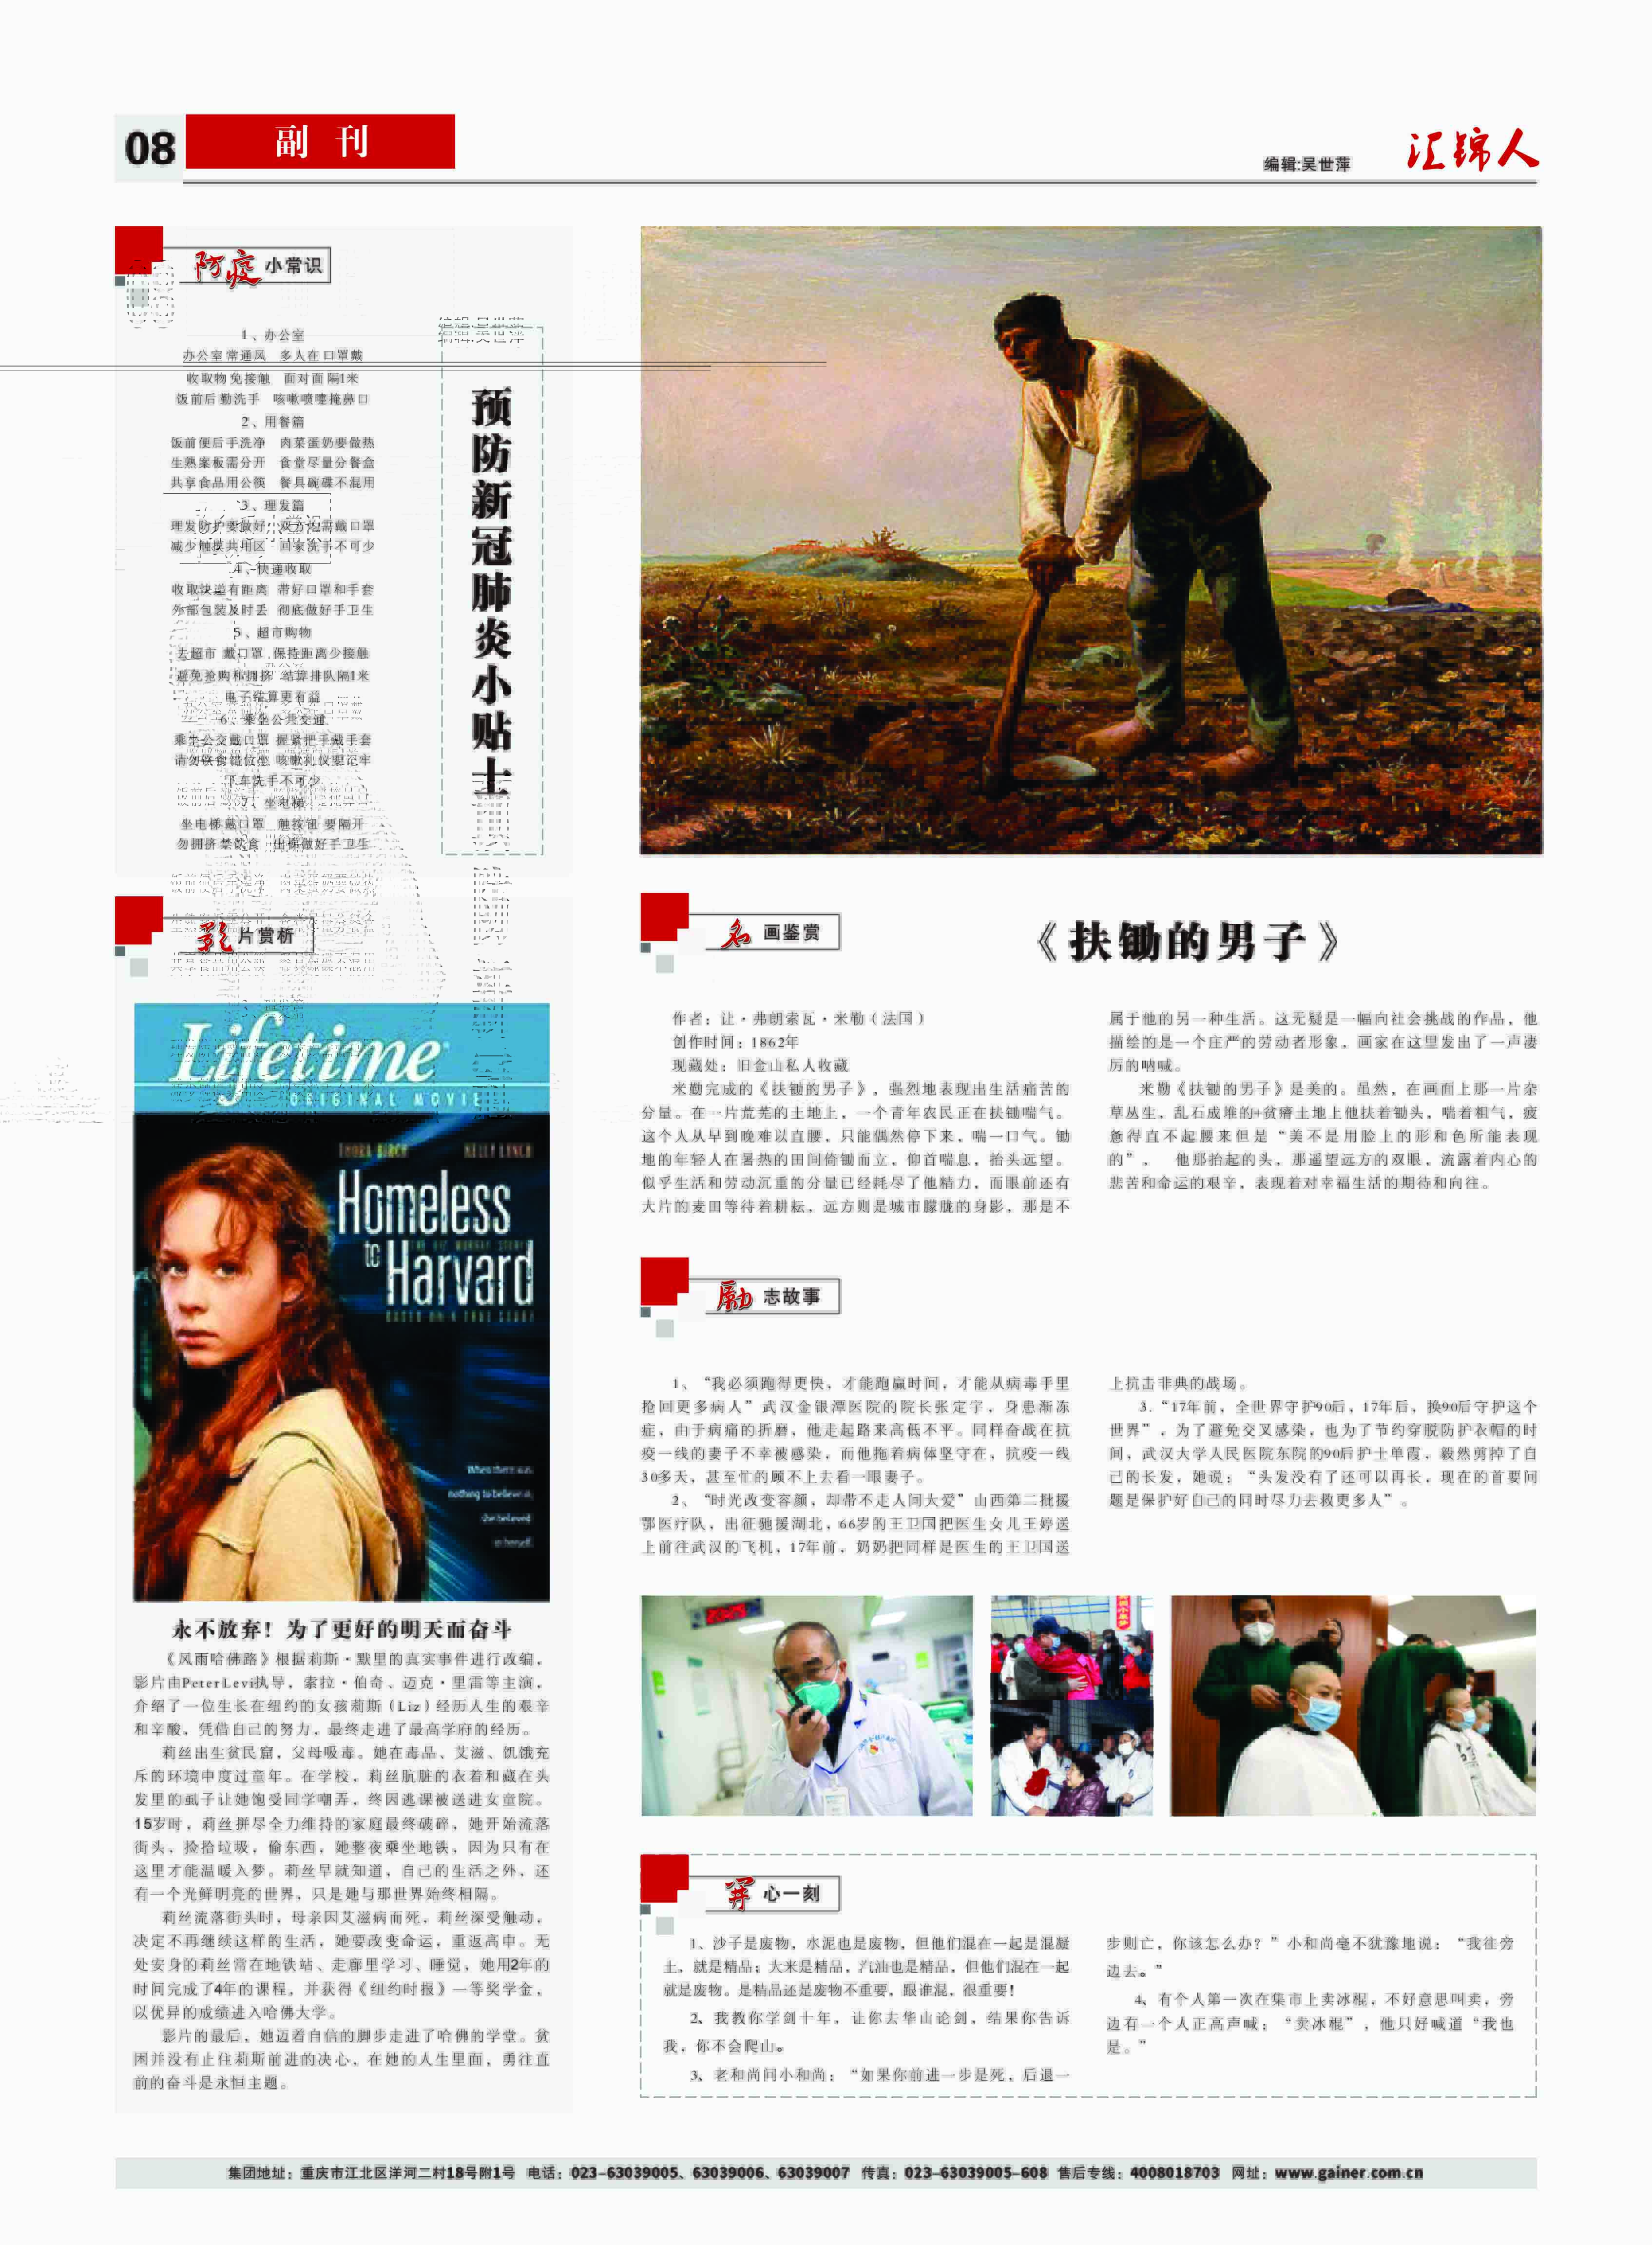 汇锦期刊第16期-修改版2版(3)-8.jpg